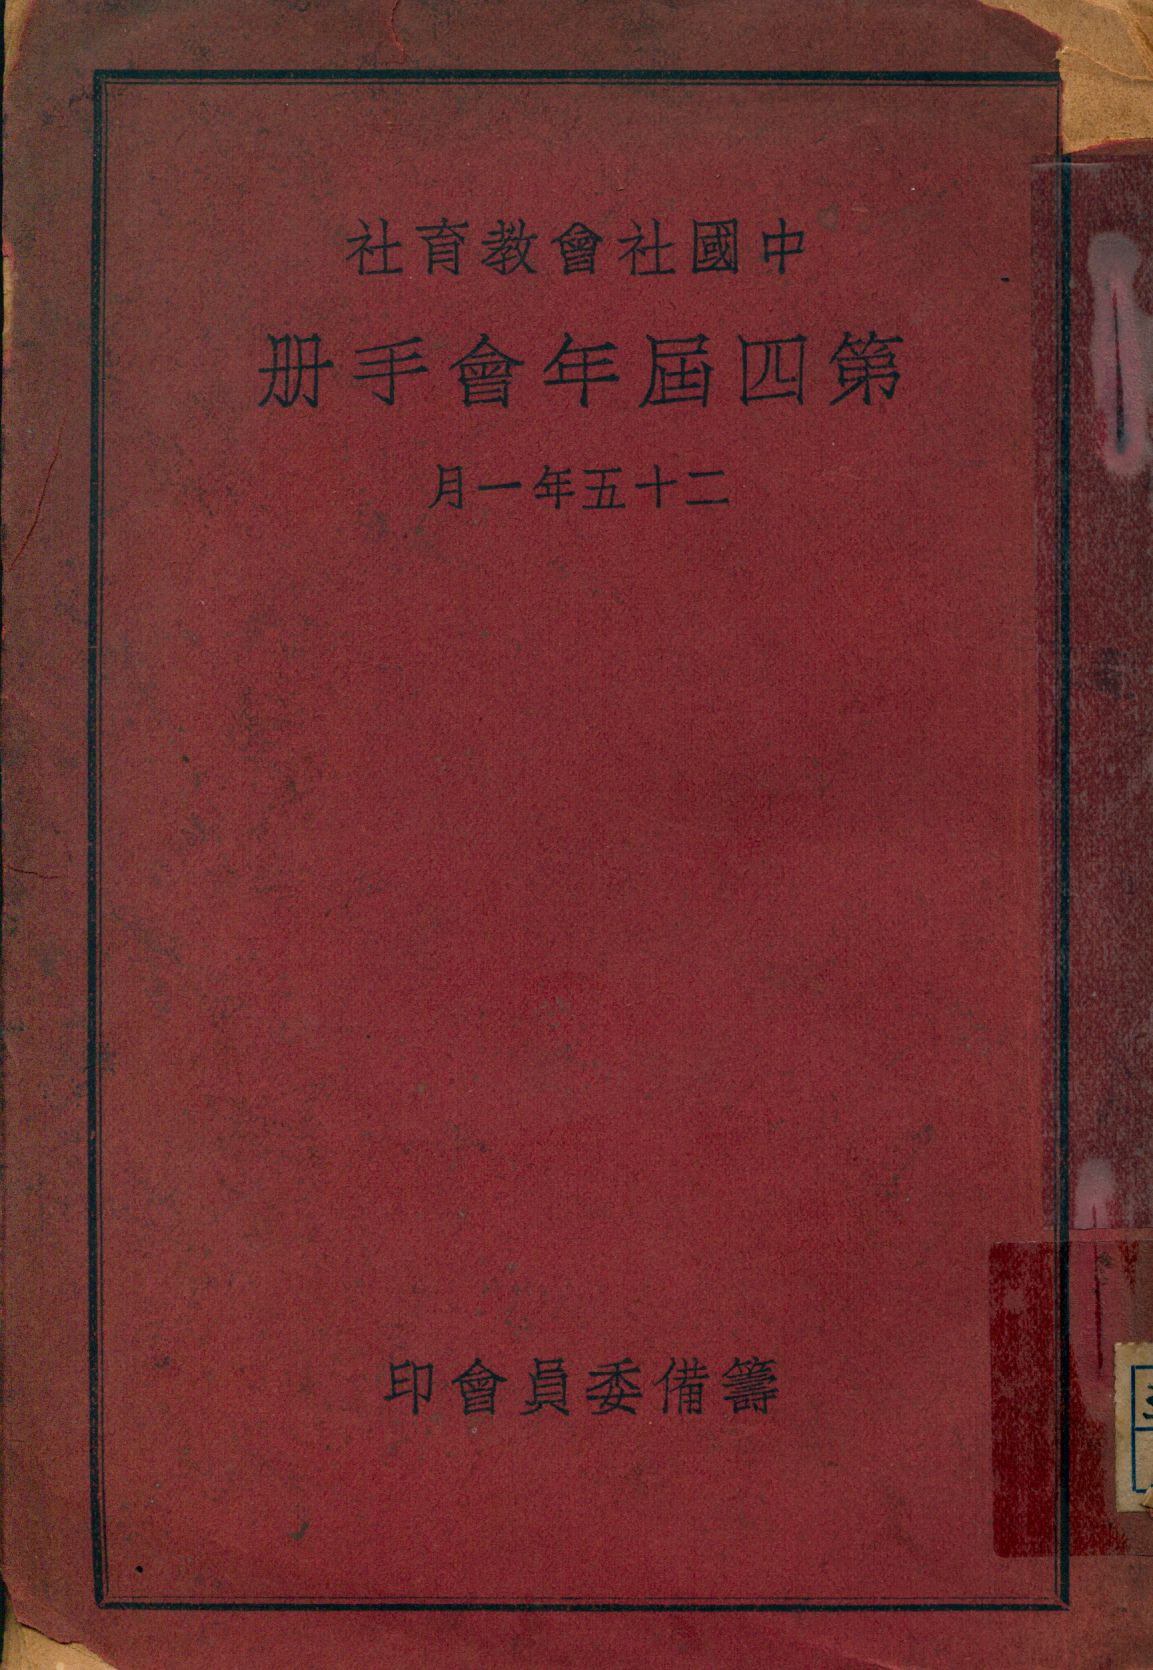 中國社會教育社第四屆年會手冊